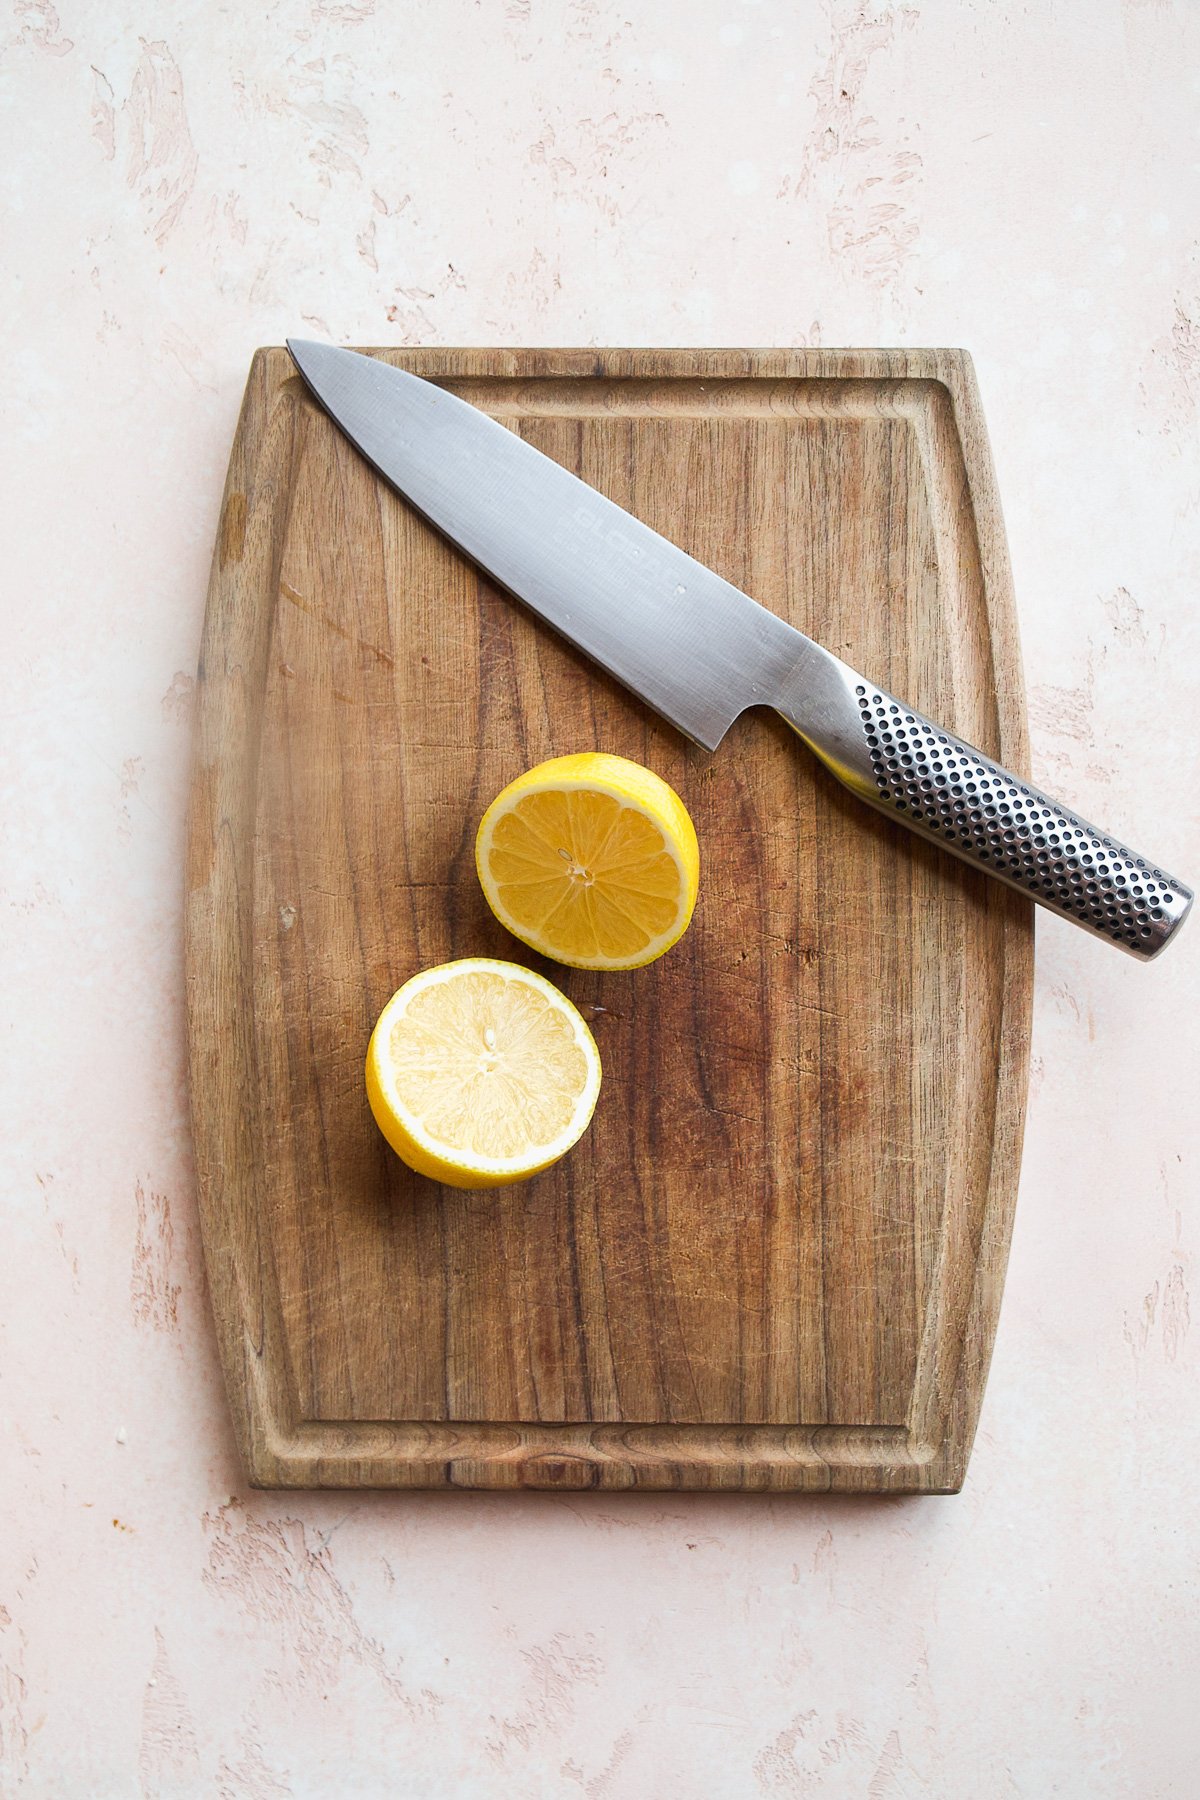 Lemon on  wooden cutting board cut in half.